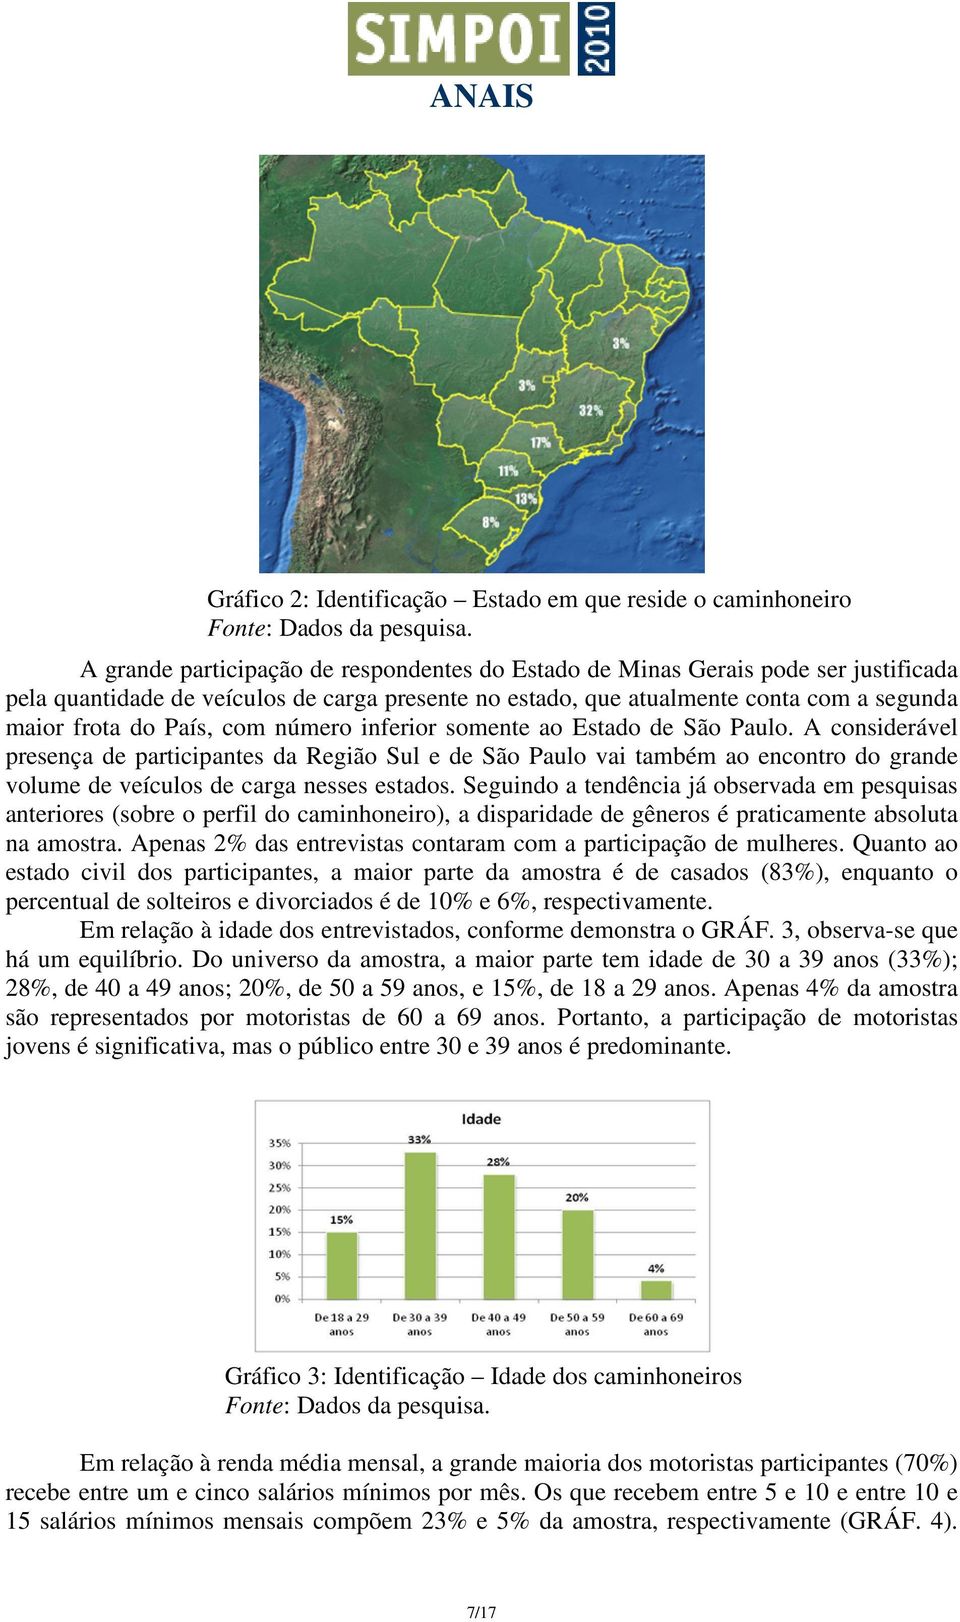 A considerável presença de participantes da Região Sul e de São Paulo vai também ao encontro do grande volume de veículos de carga nesses estados.